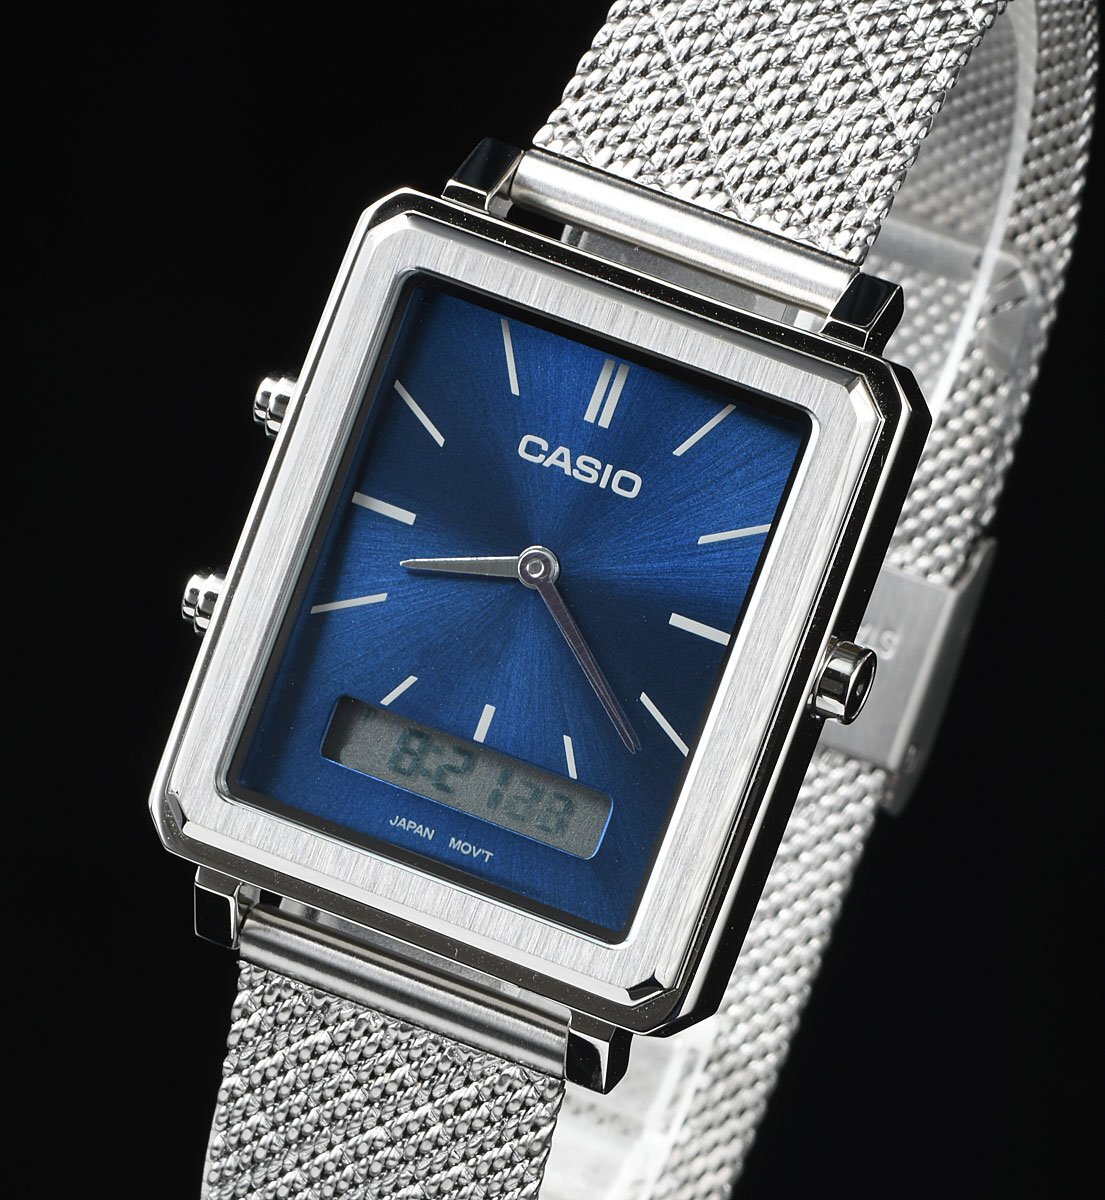  новый товар 1 иен реимпорт Casio наручные часы CASIO прекрасный голубой металлик ретро Digi-Ana specification сигнализация хронограф мужской boys 30m водонепроницаемый 